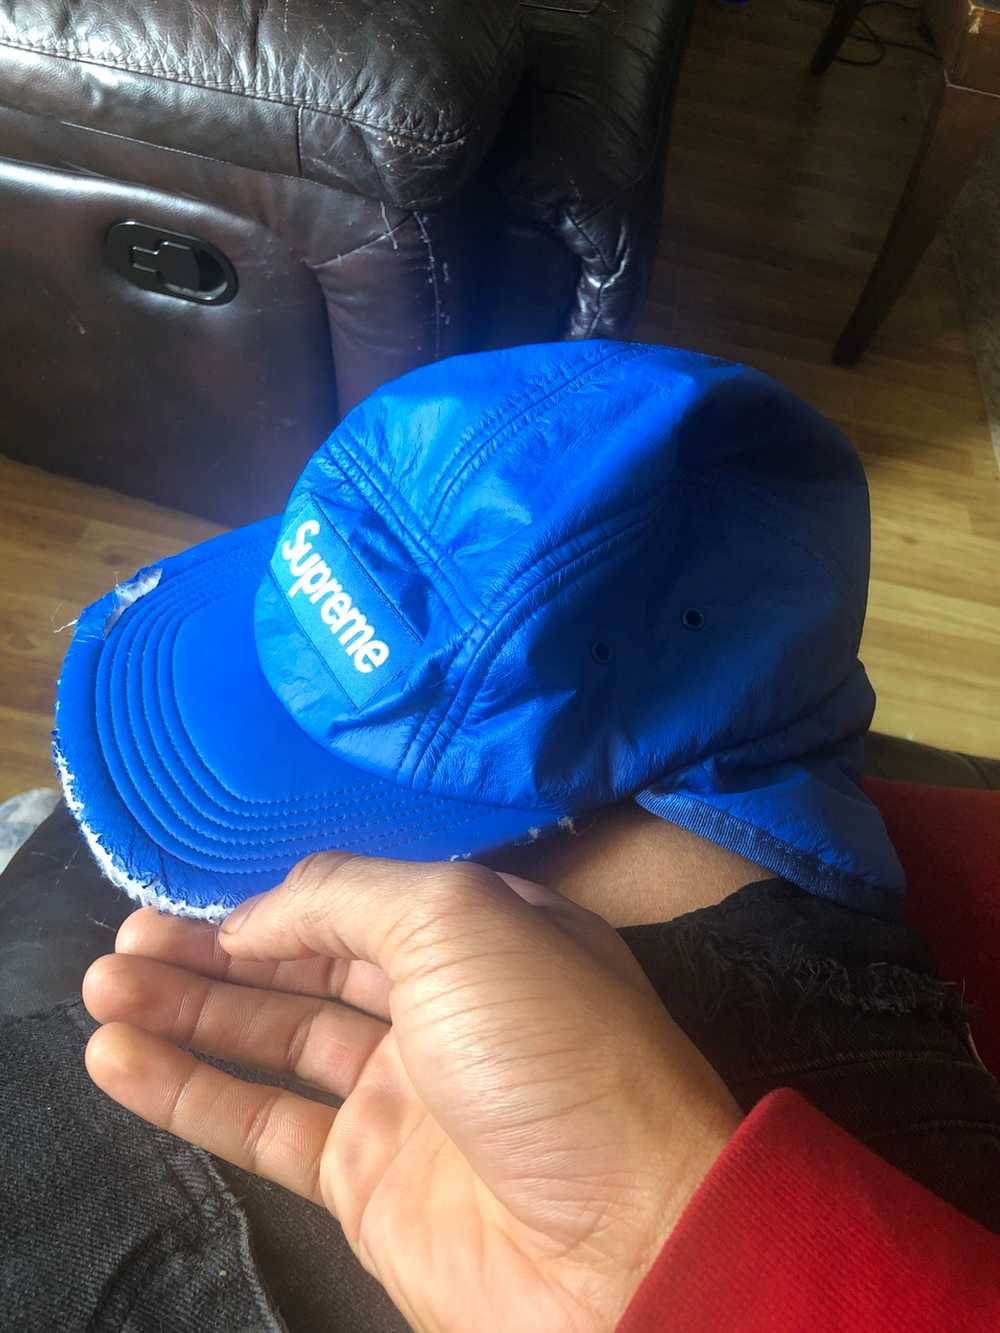 Supreme Blue Hats for Men